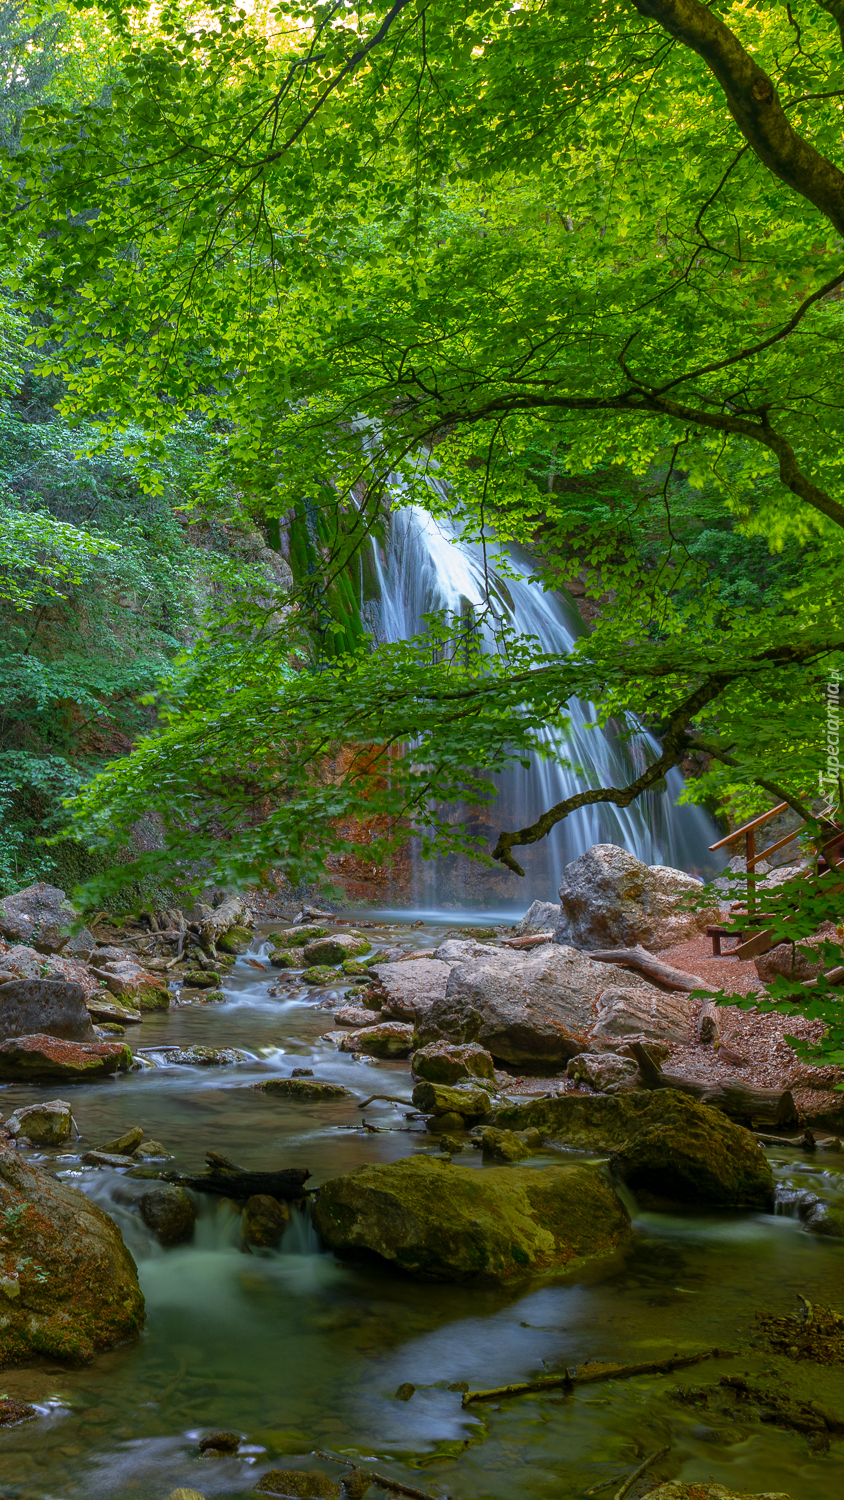 Wodospad i kamienista rzeka w lesie